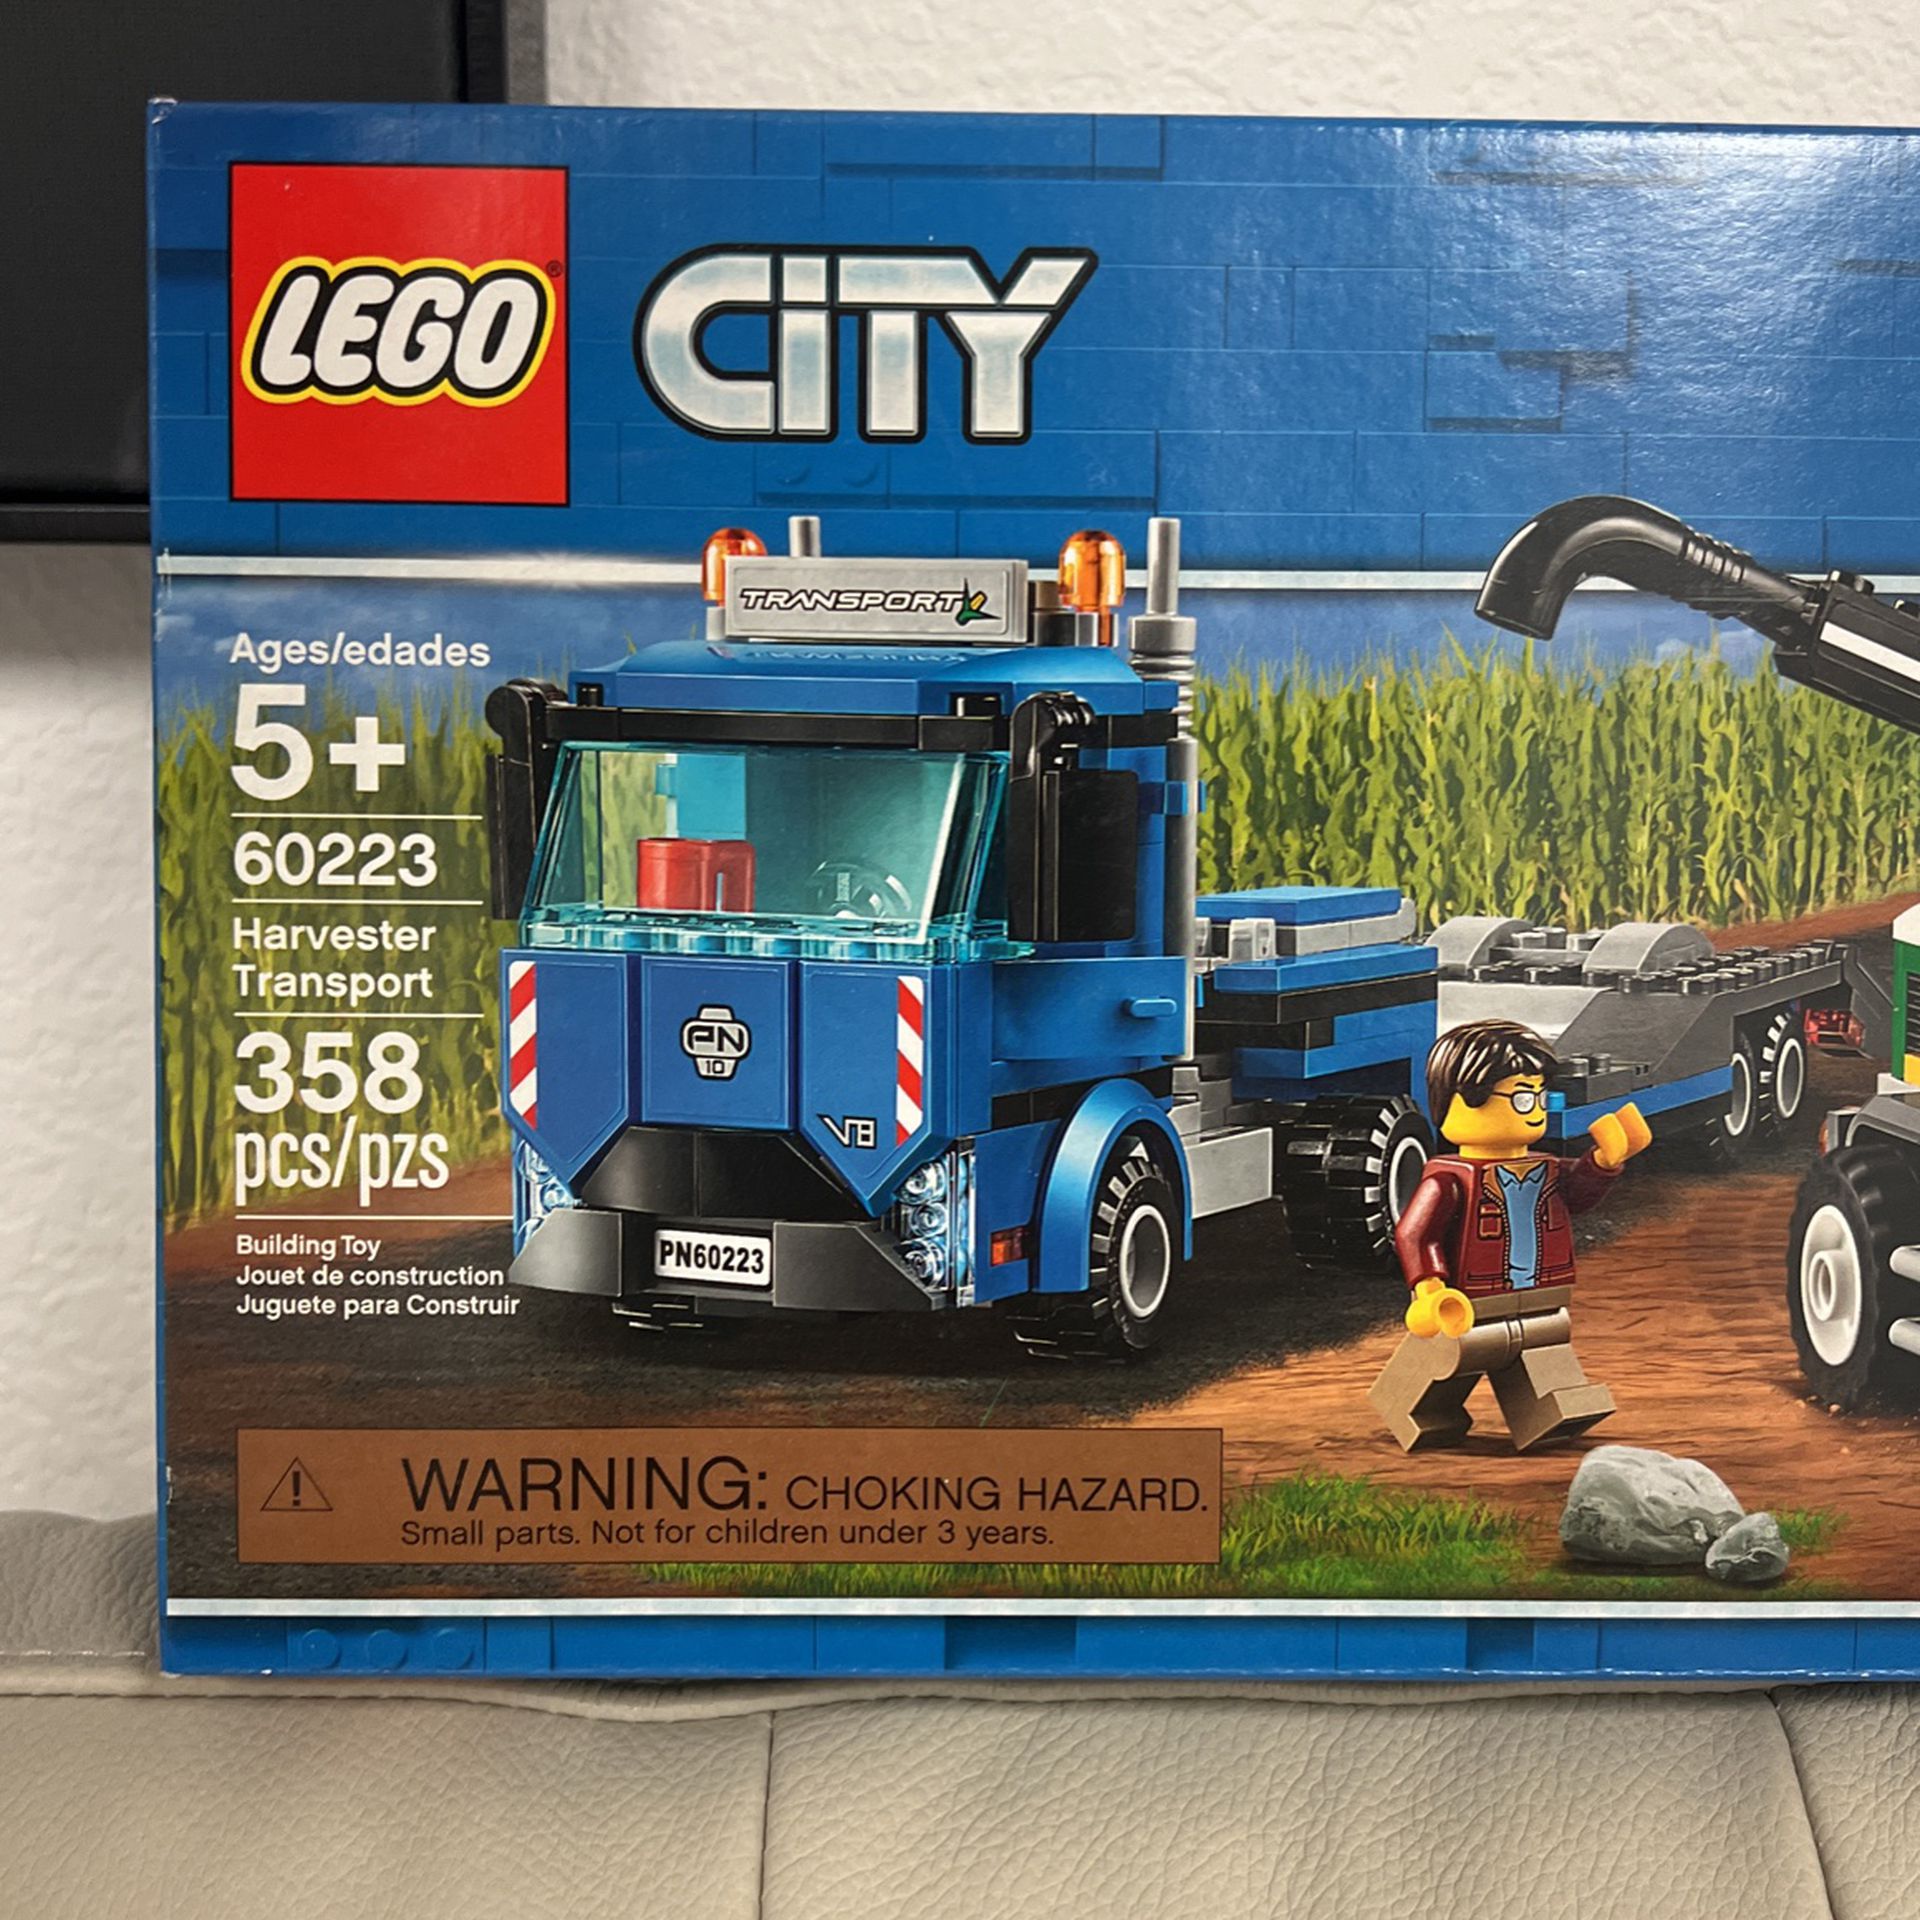 LEGO City Harvester Transport Set 60223 for Sale in AZ - OfferUp